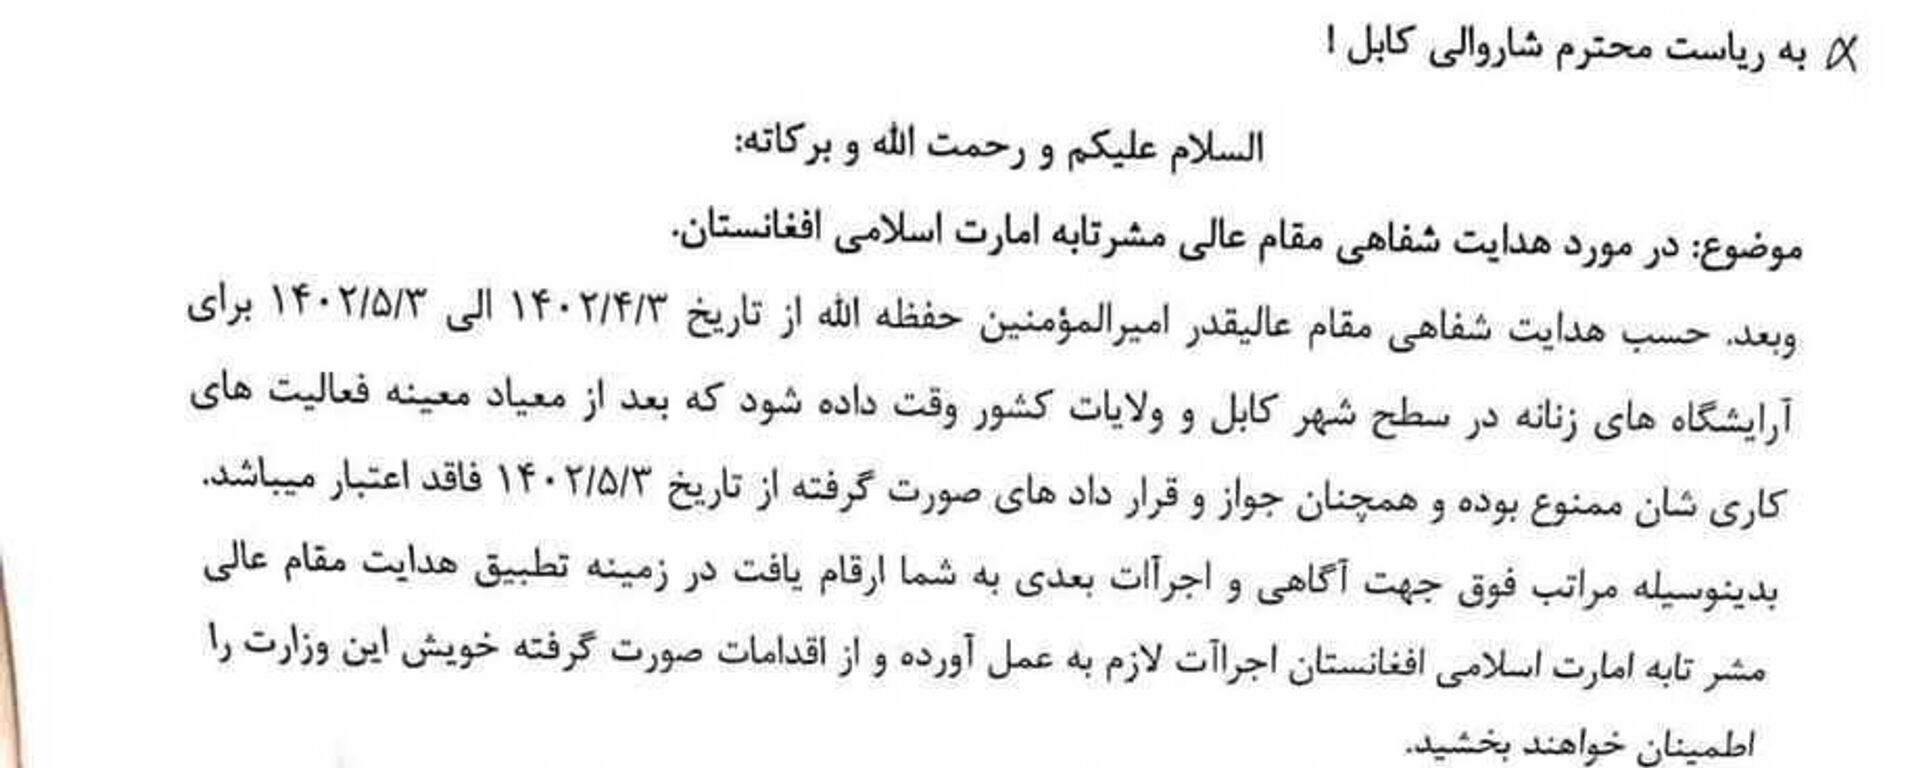 طالبان بانوان را بیشتر به تنگنا قرار دادند/ رهبر طالبان فرمان بستن آرایشگاه های بانوان را صادر کرد - اسپوتنیک افغانستان  , 1920, 02.07.2023